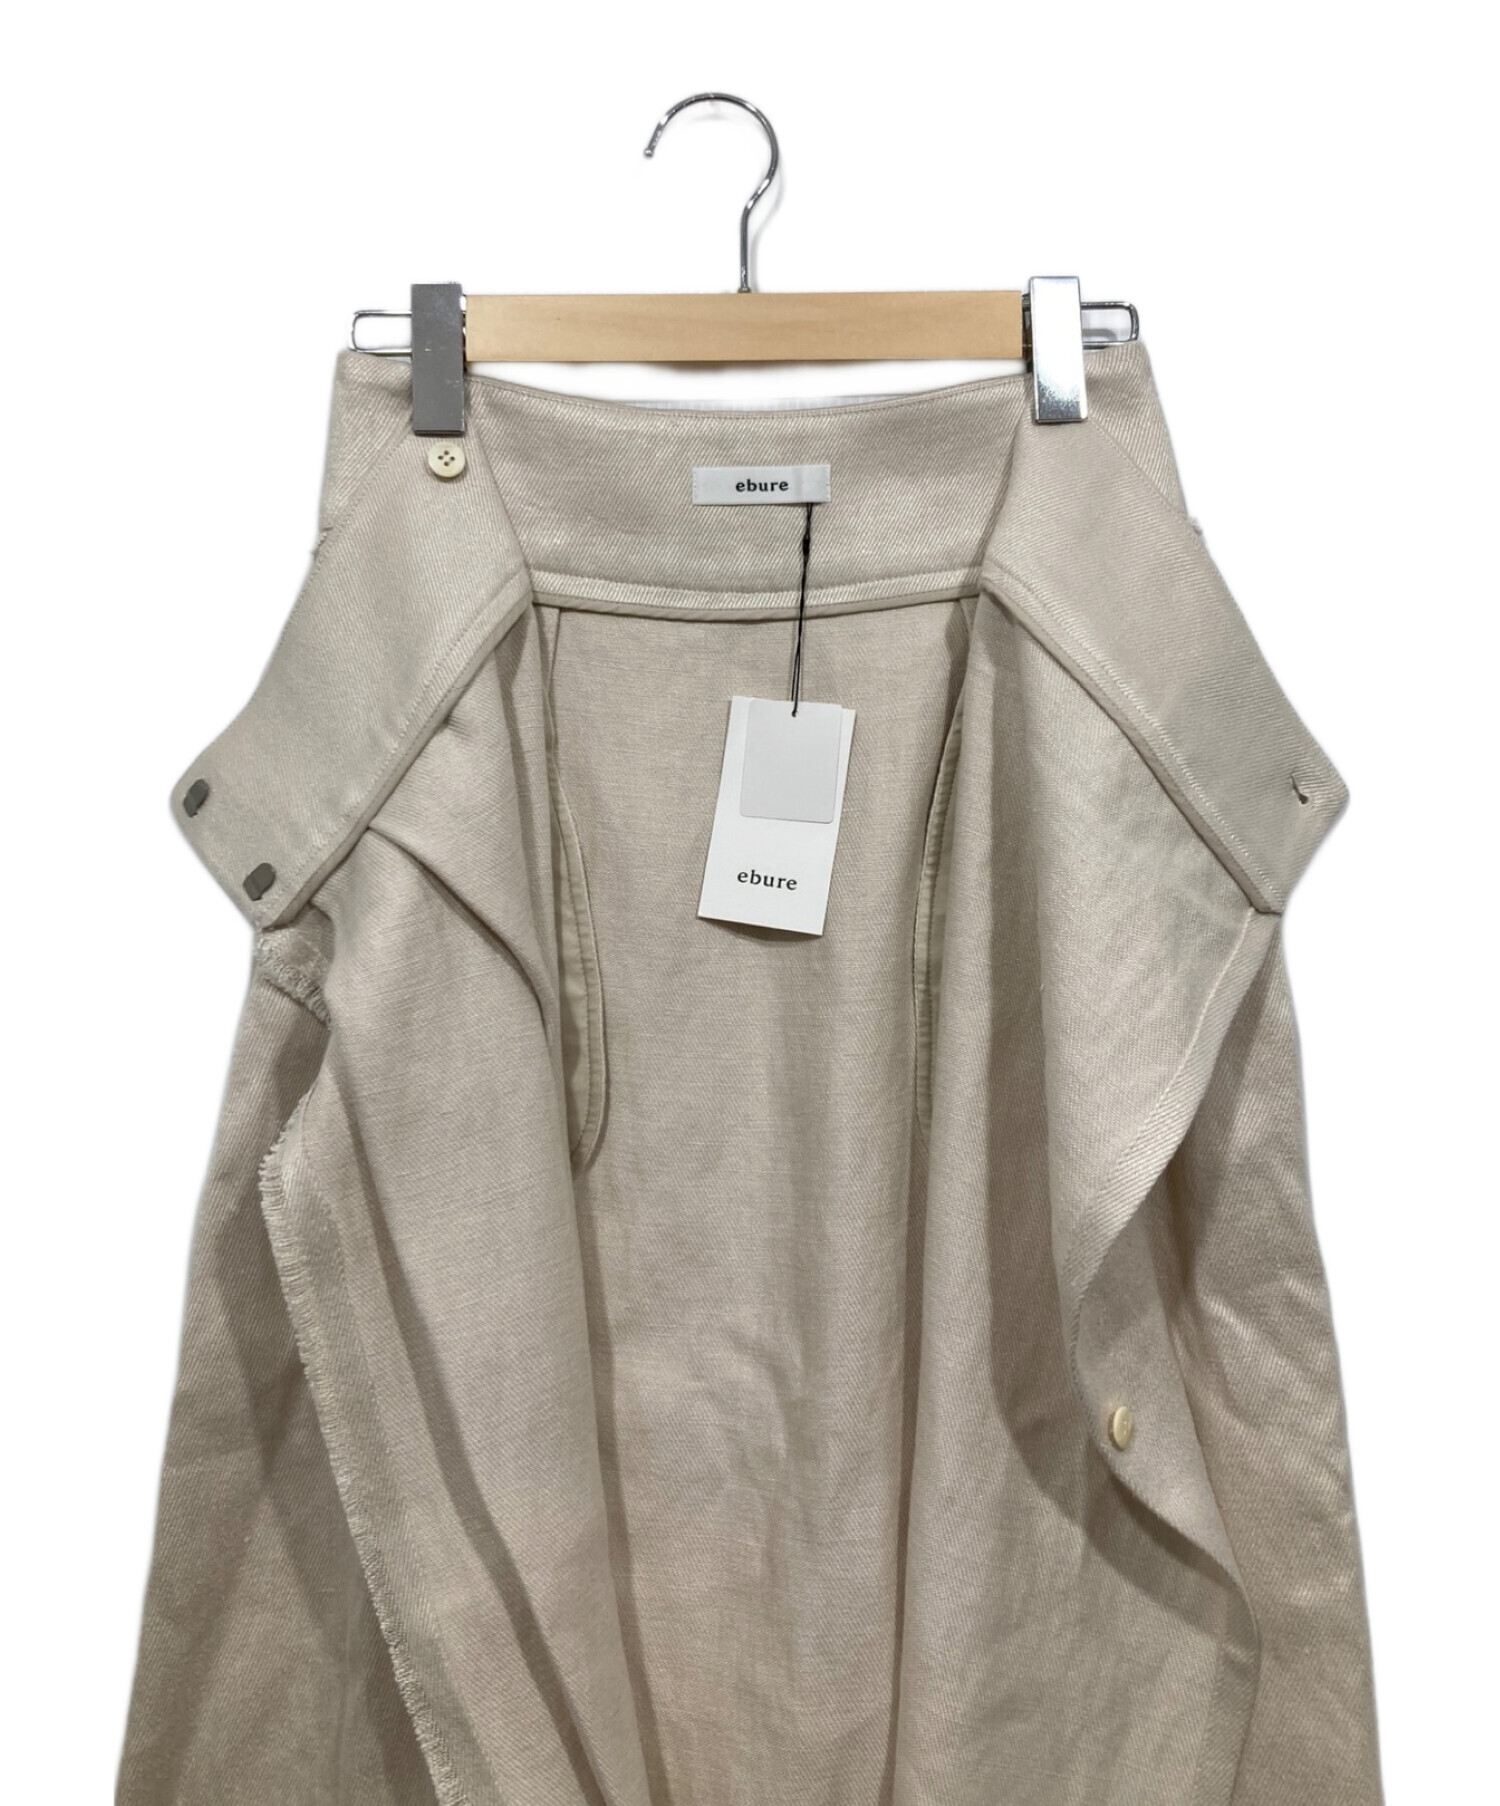 ebure (エブール) Heavy Linen Skirt/フリンジリネンロングスカート アイボリー サイズ:36